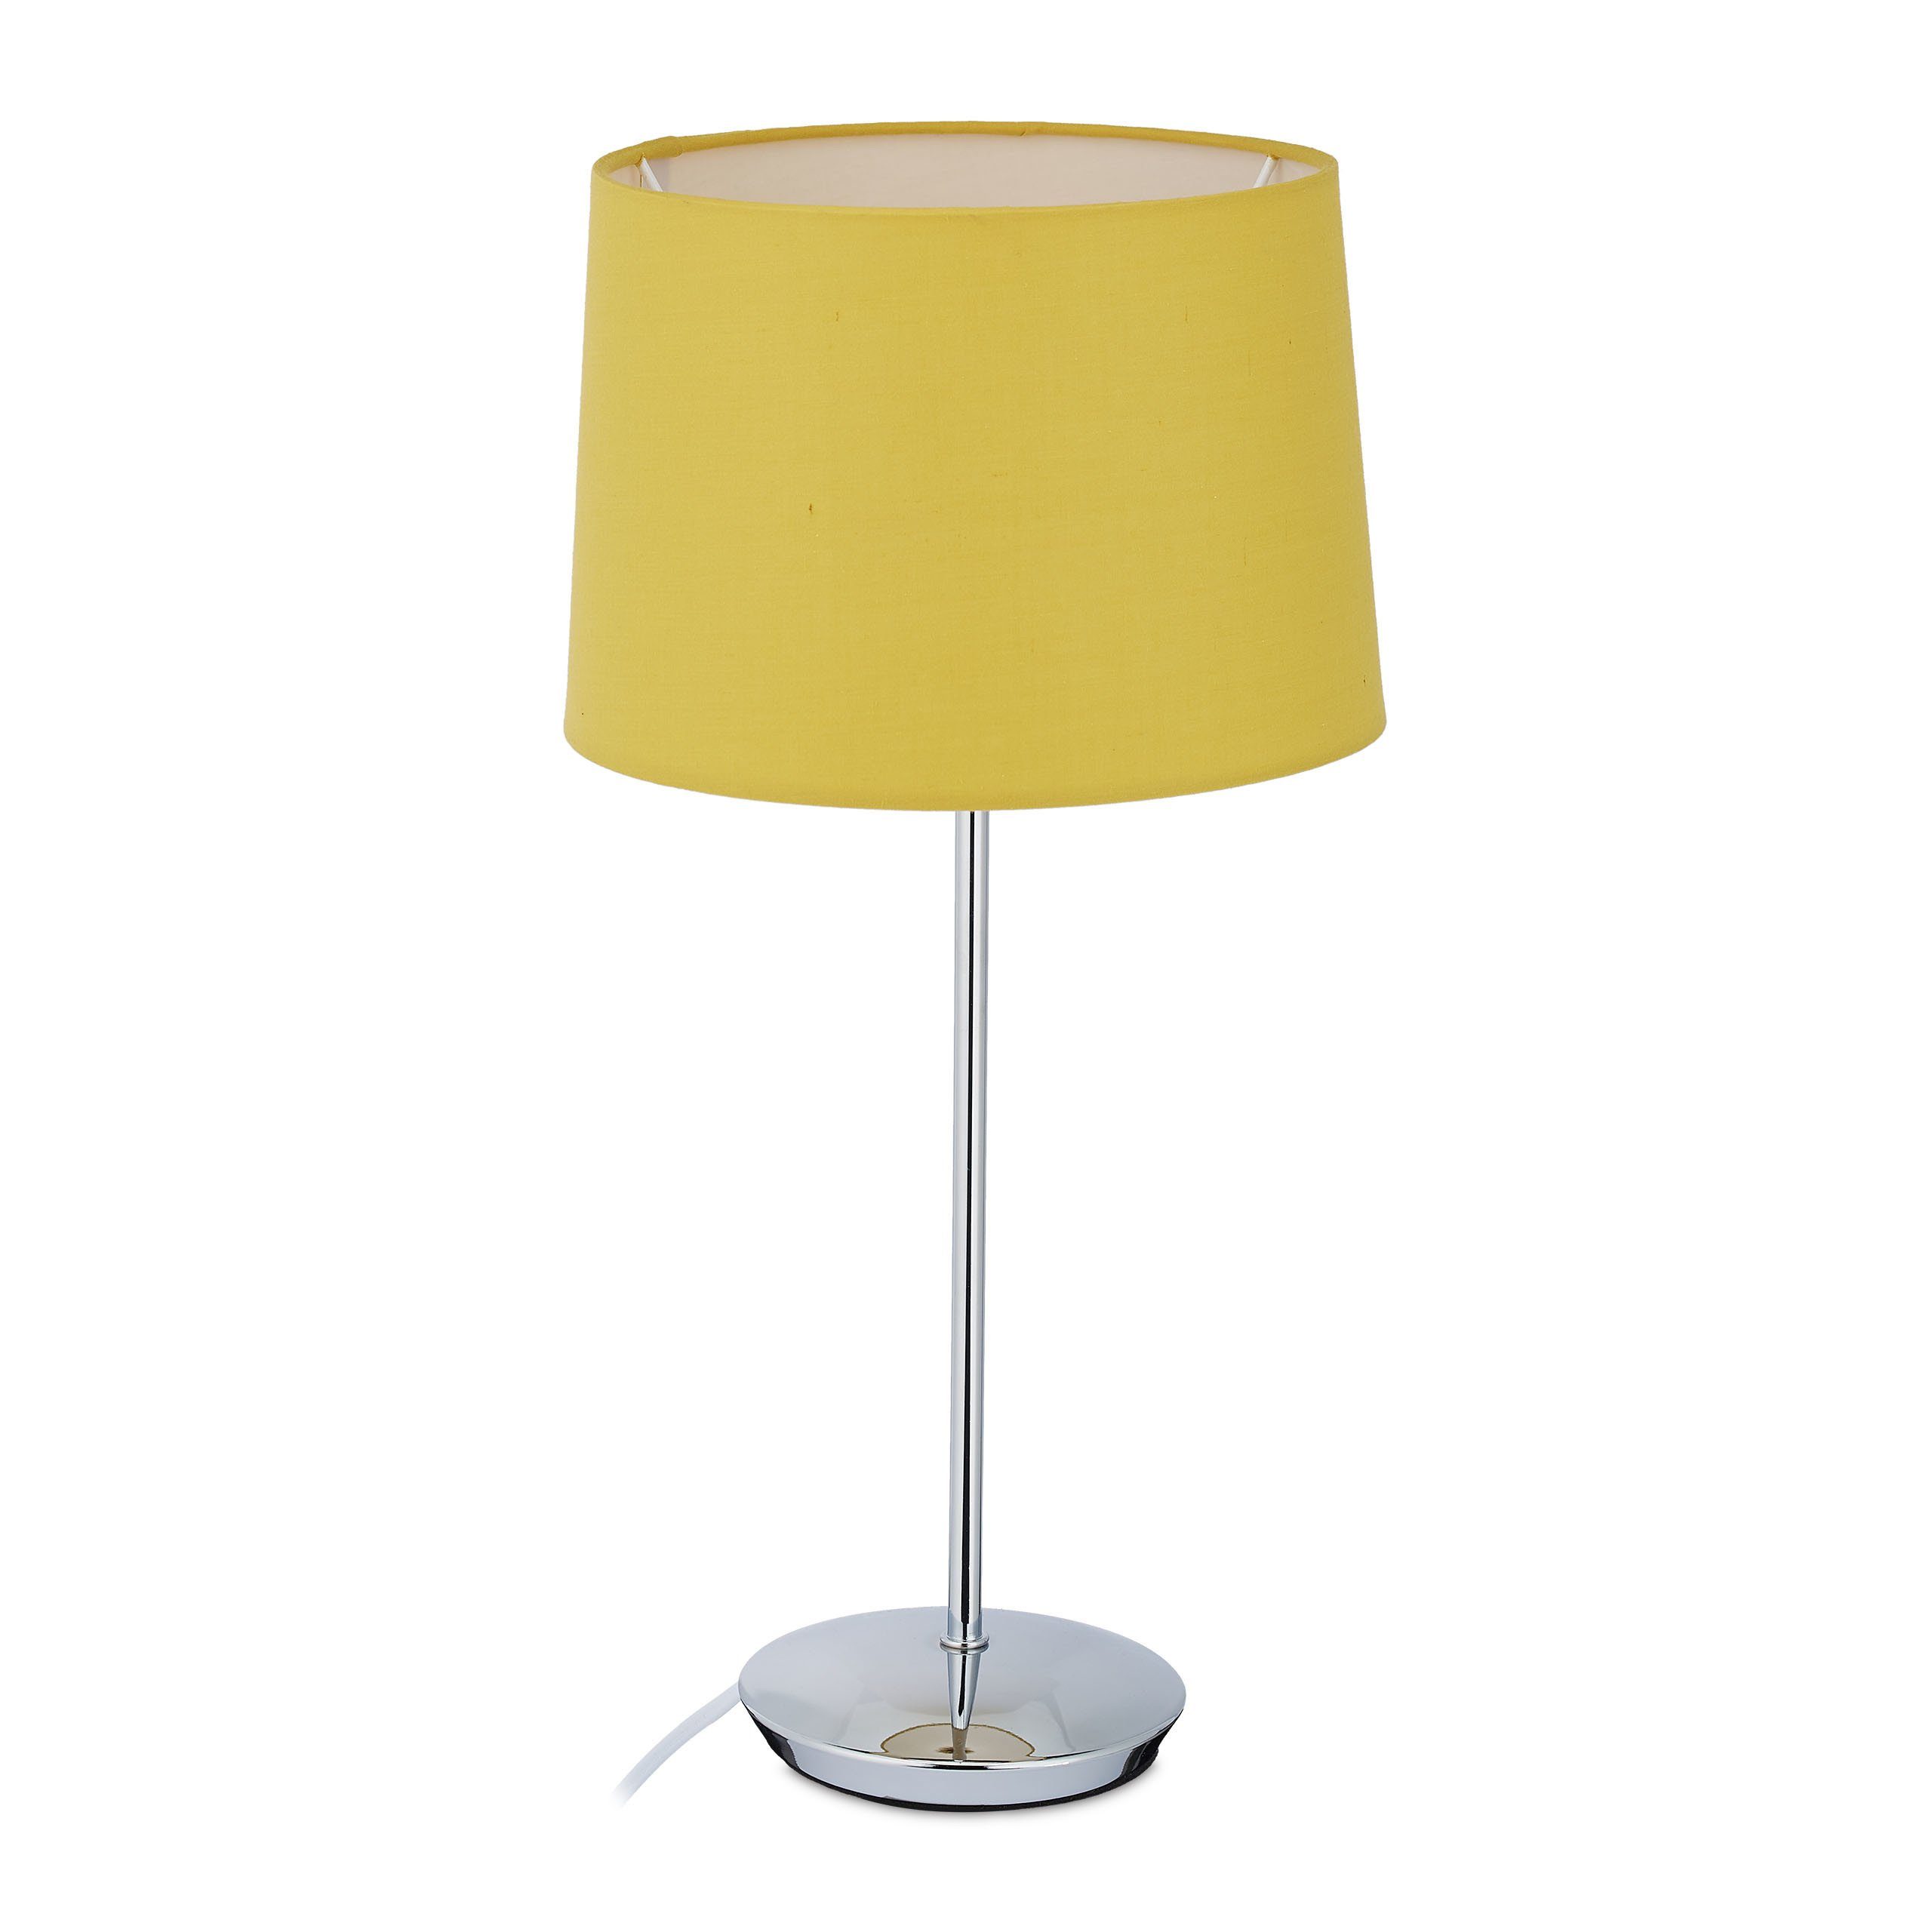 relaxdays Tischleuchte Tischlampe mit Stoffschirm, Gelb Silber Gelb